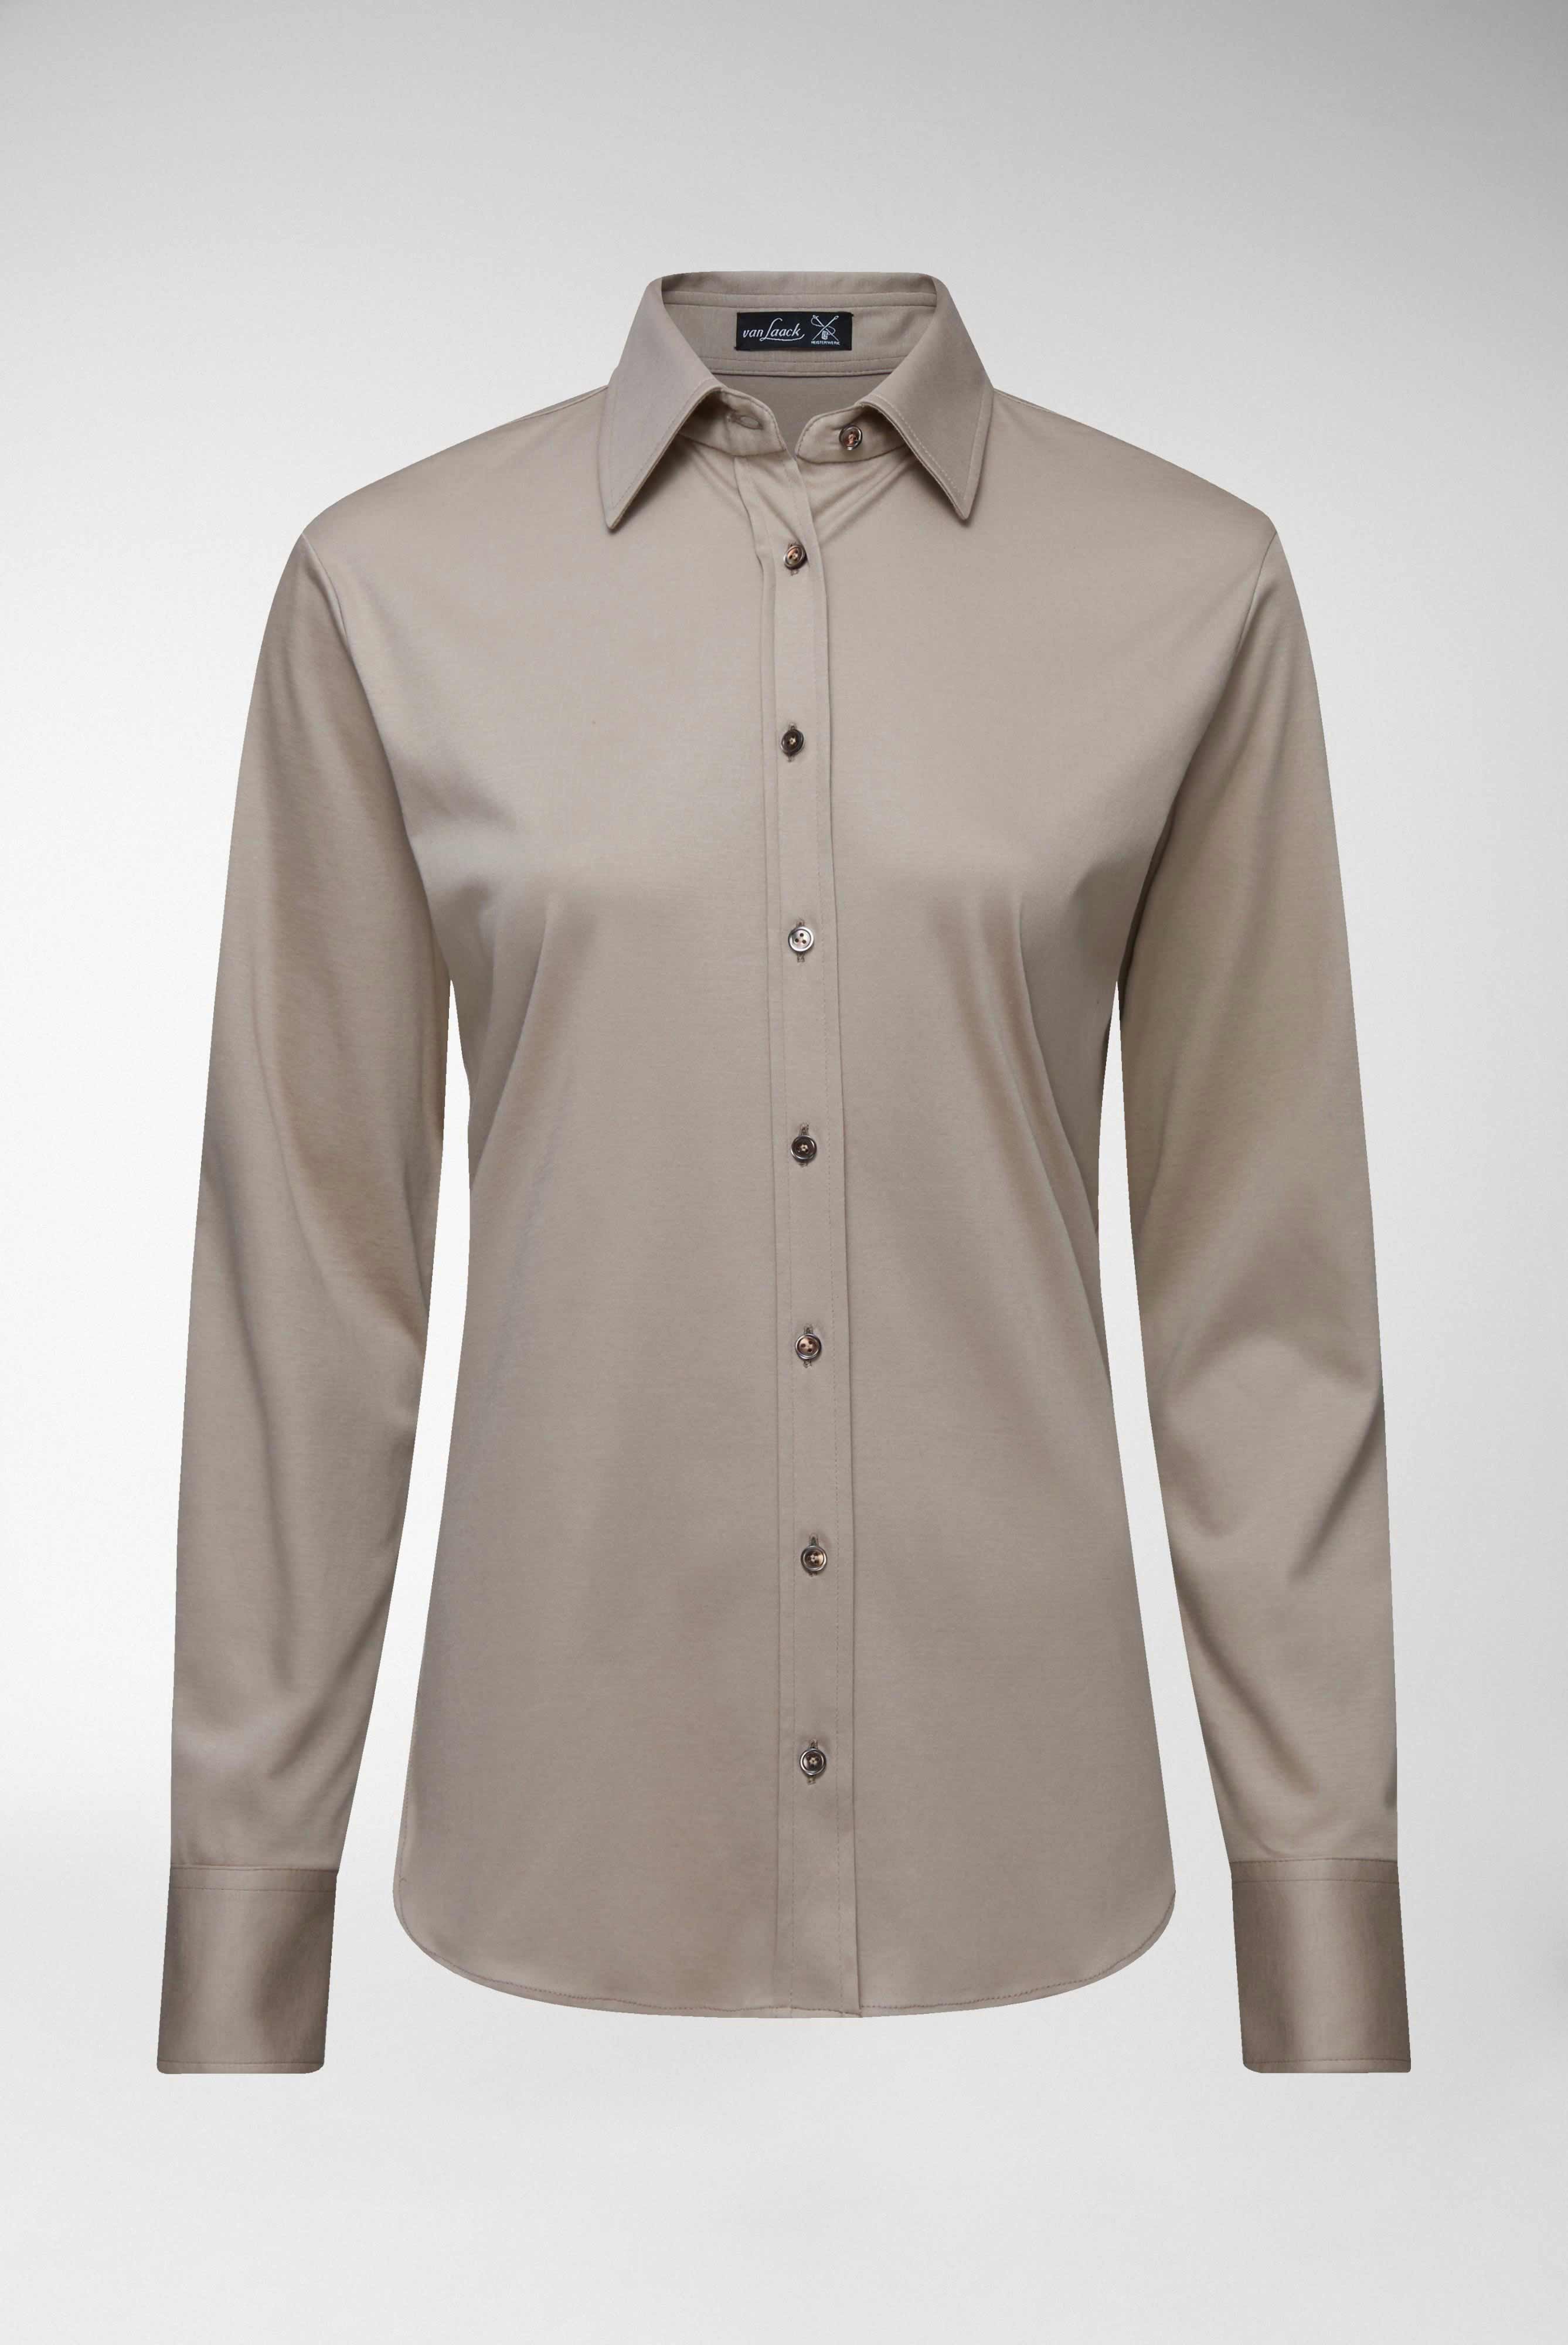 Casual Blusen+Taillierte Jersey Hemdbluse aus Schweizer Baumwolle+05.603Y..180031.140.36